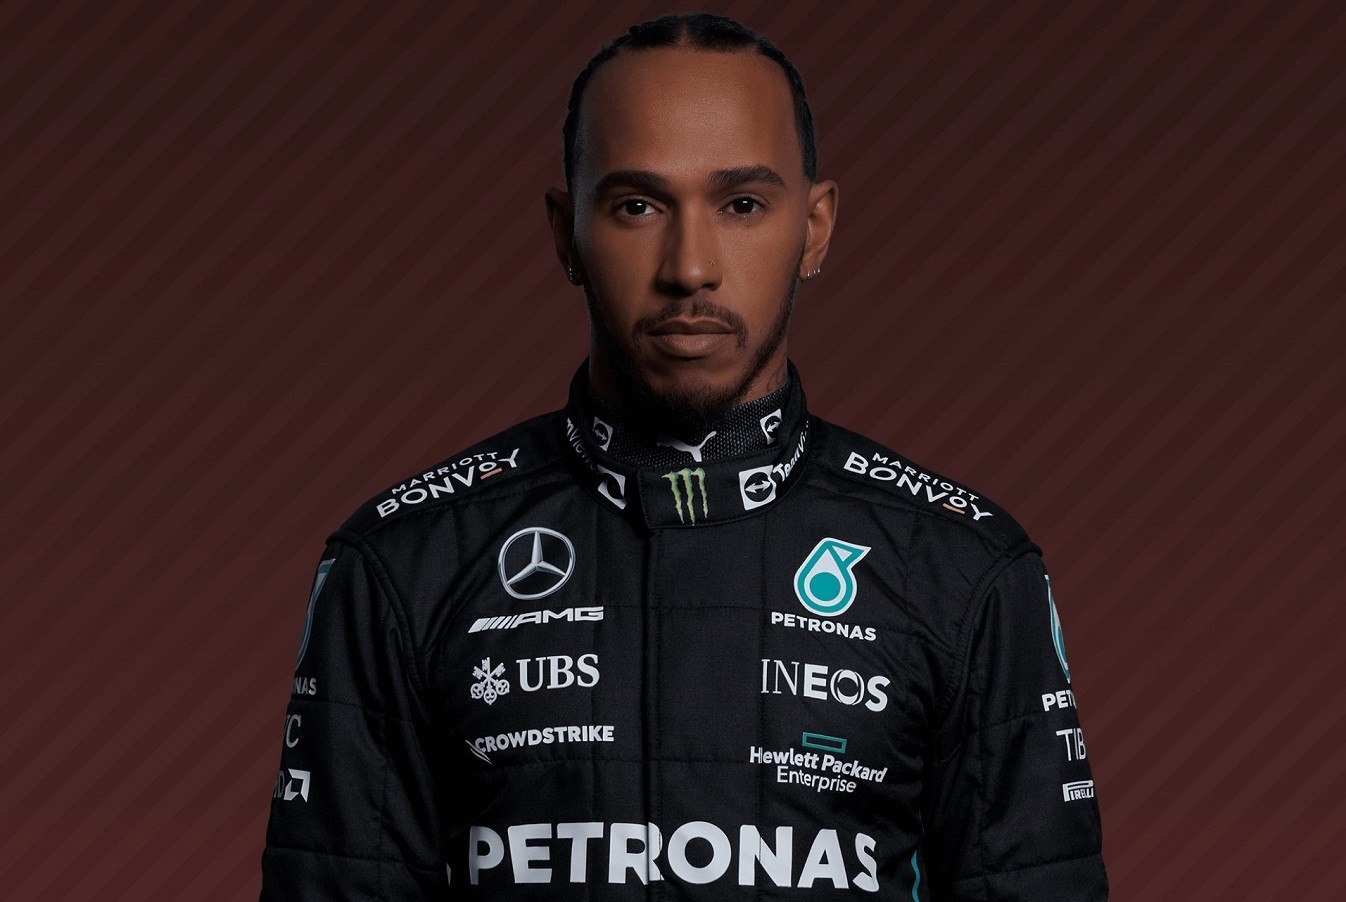 Ο επτάκις πρωταθλητής Lewis Hamilton αλλάζει όνομα